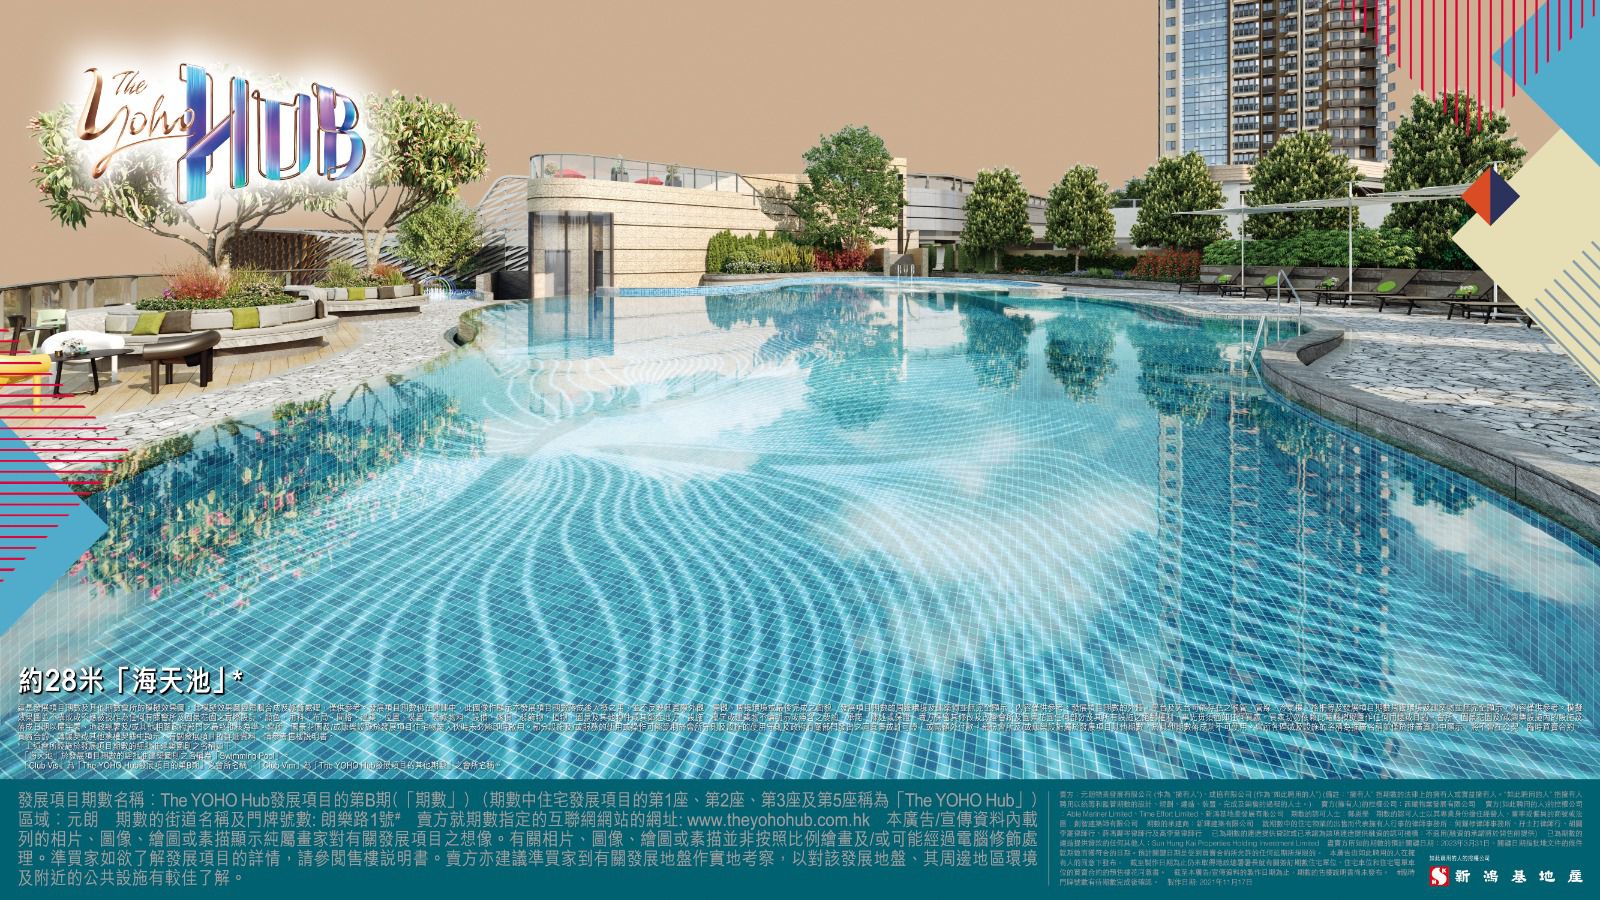 元朗新盤｜新地The YOHO Hub約4萬方呎雙住客會所 28米戶外泳池「海天池」